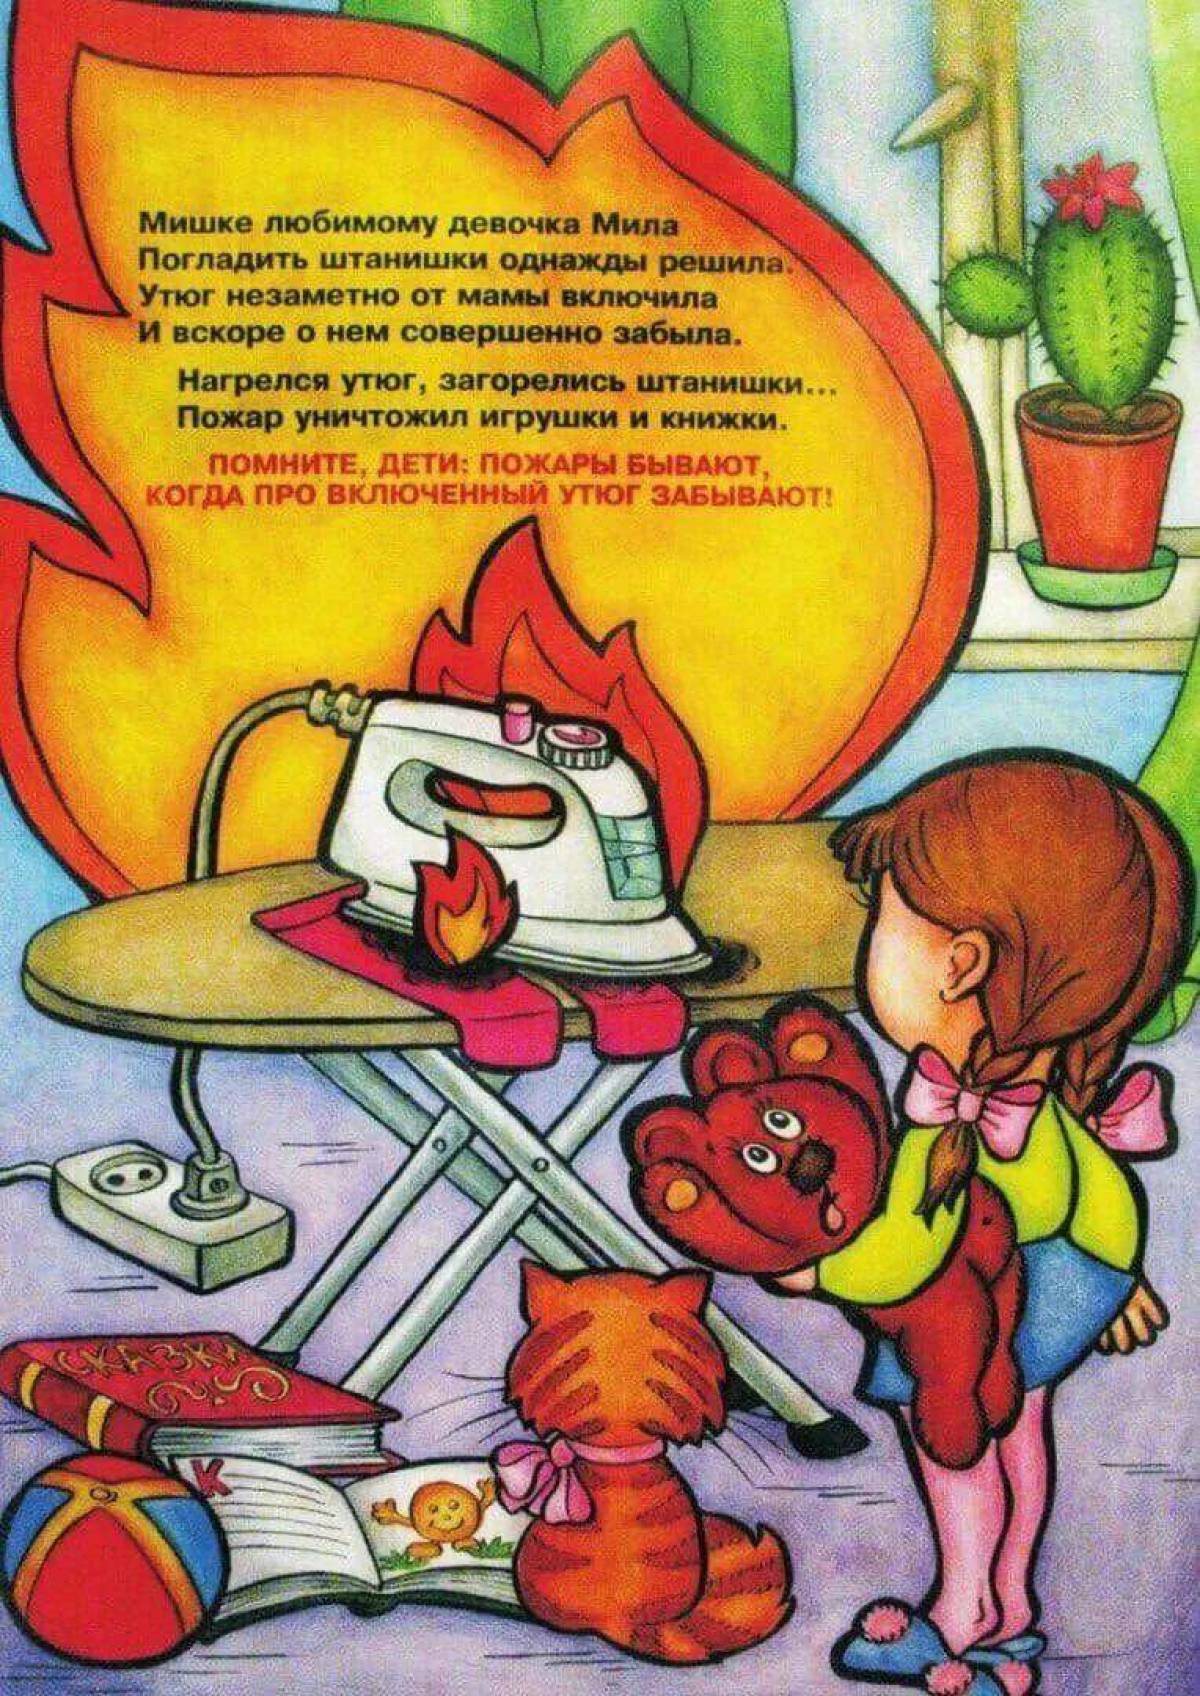 Включи без мамы. Пожарная безопасность для детей. Пожарная безопасность детя. Правила пожарной безопасности для детей. Пожарная безопастность.